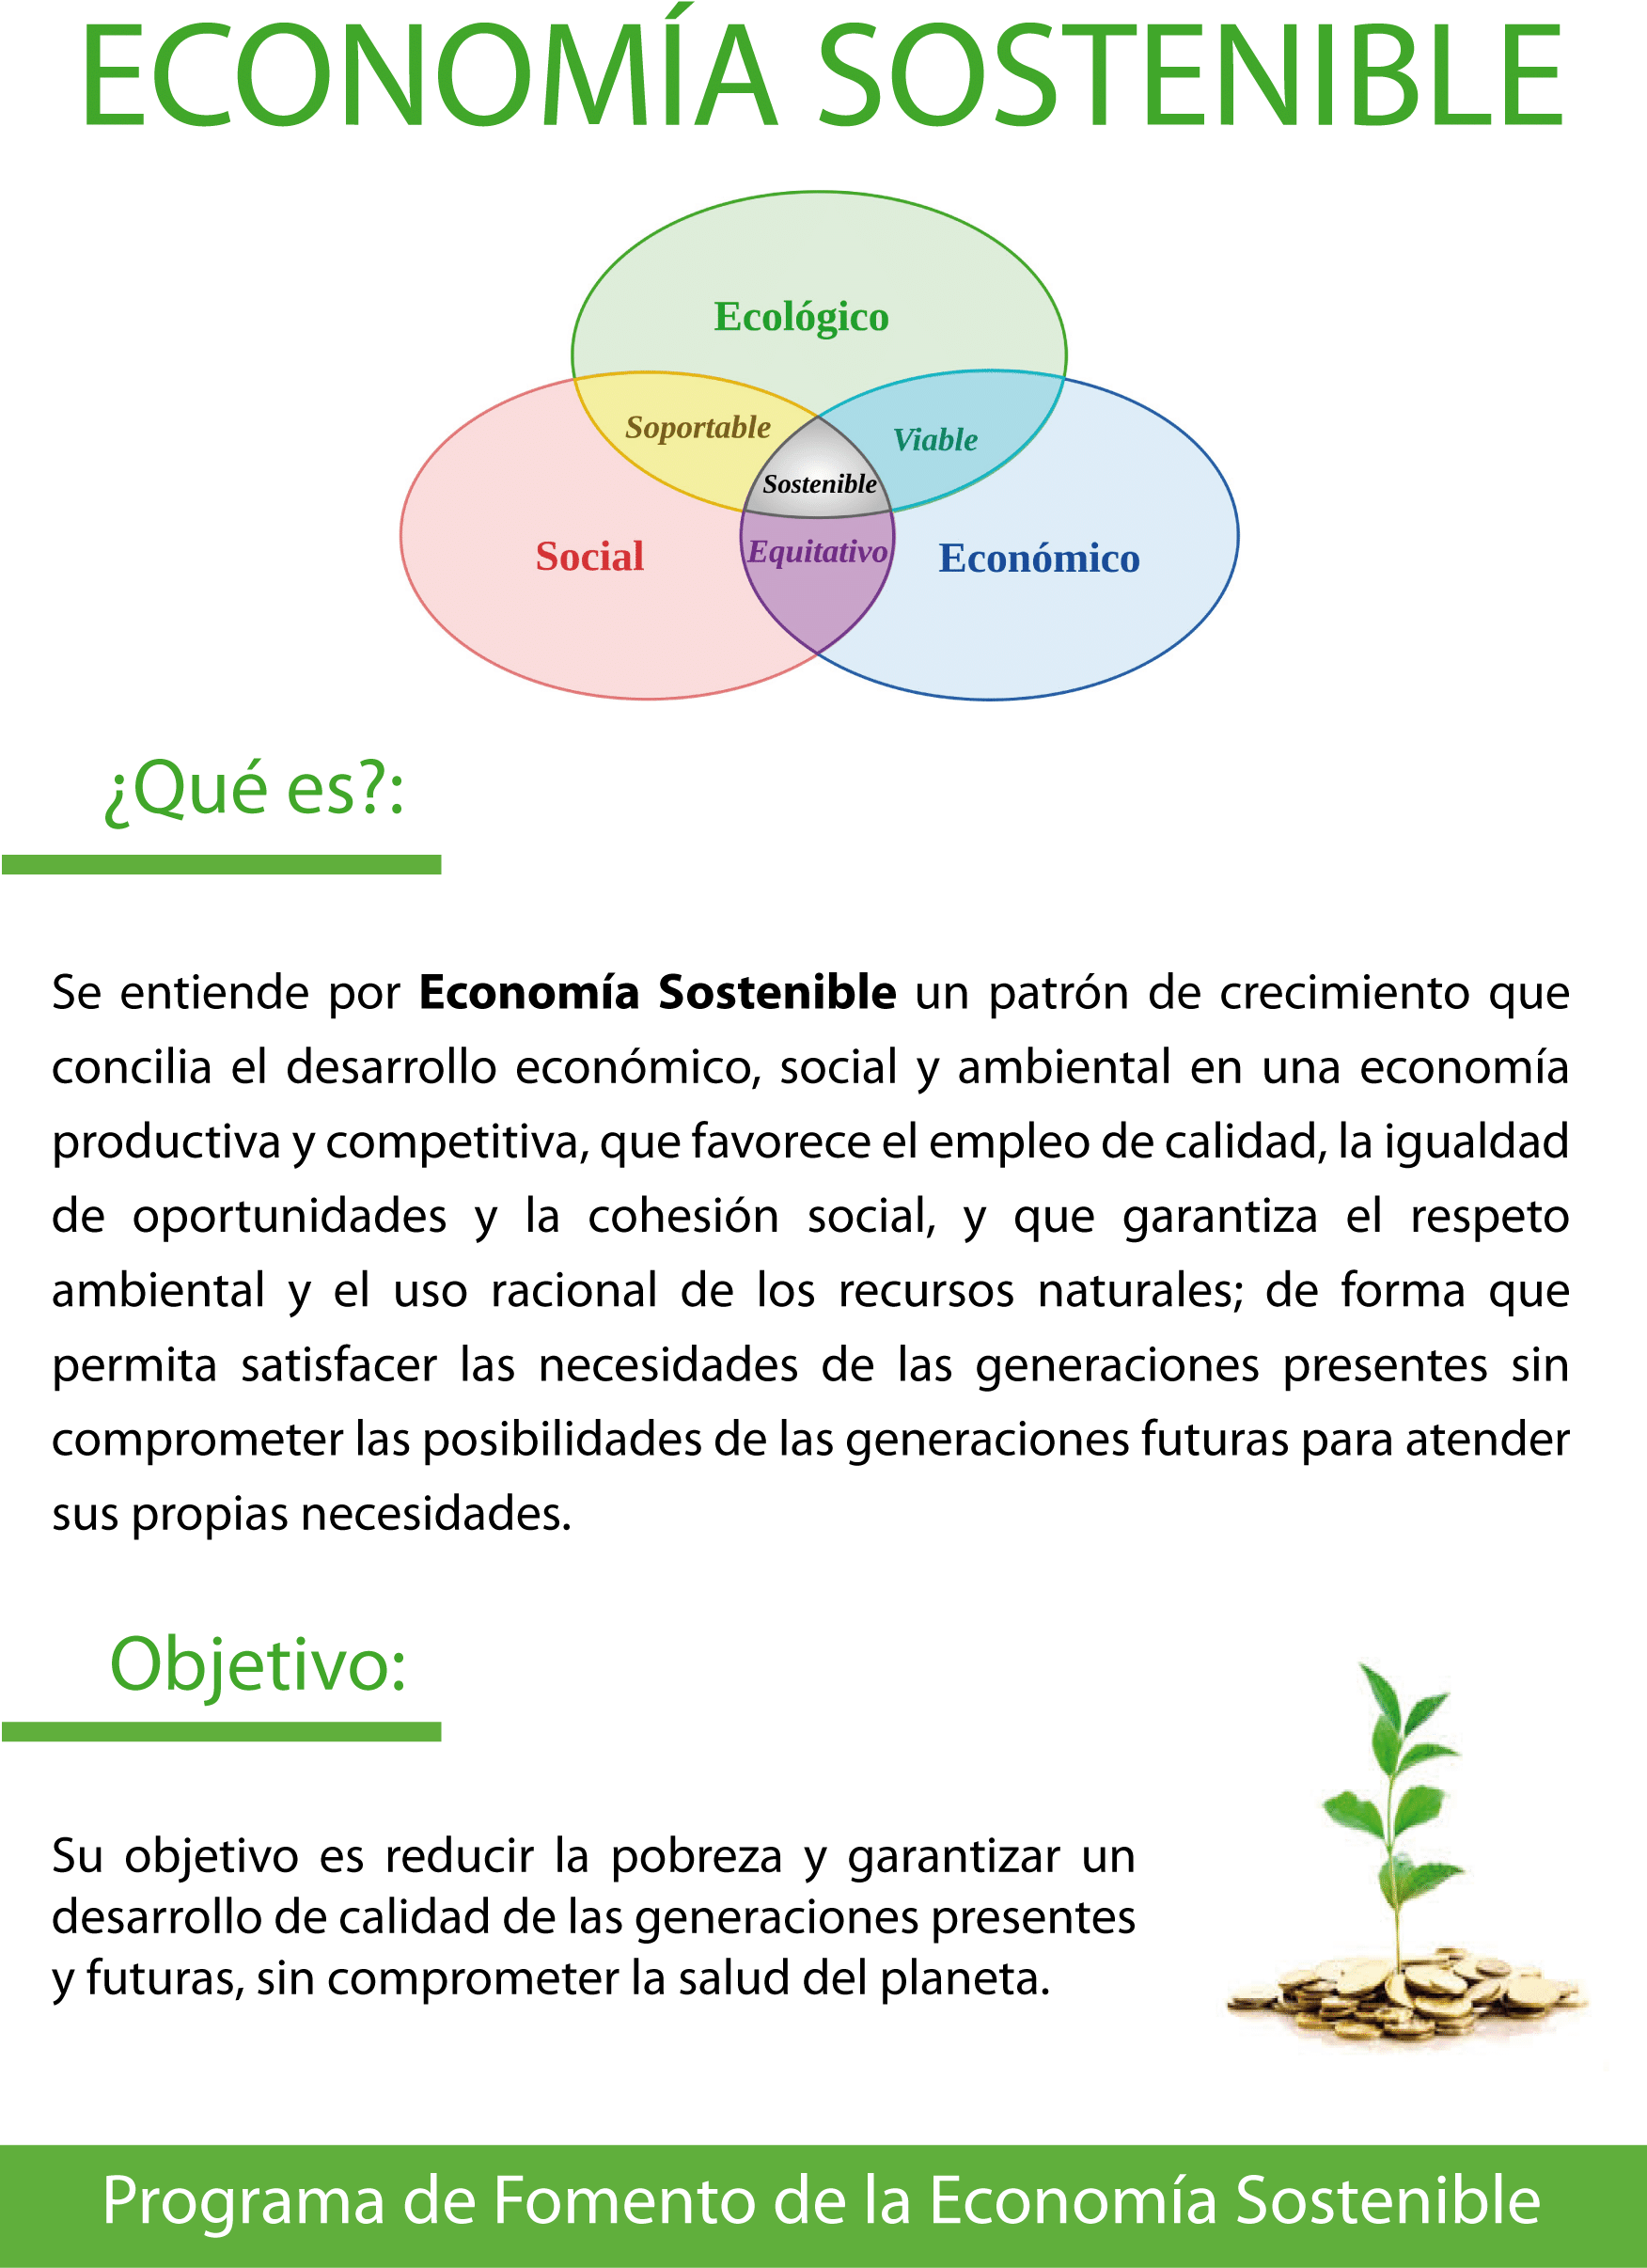 folleto economia sostenible